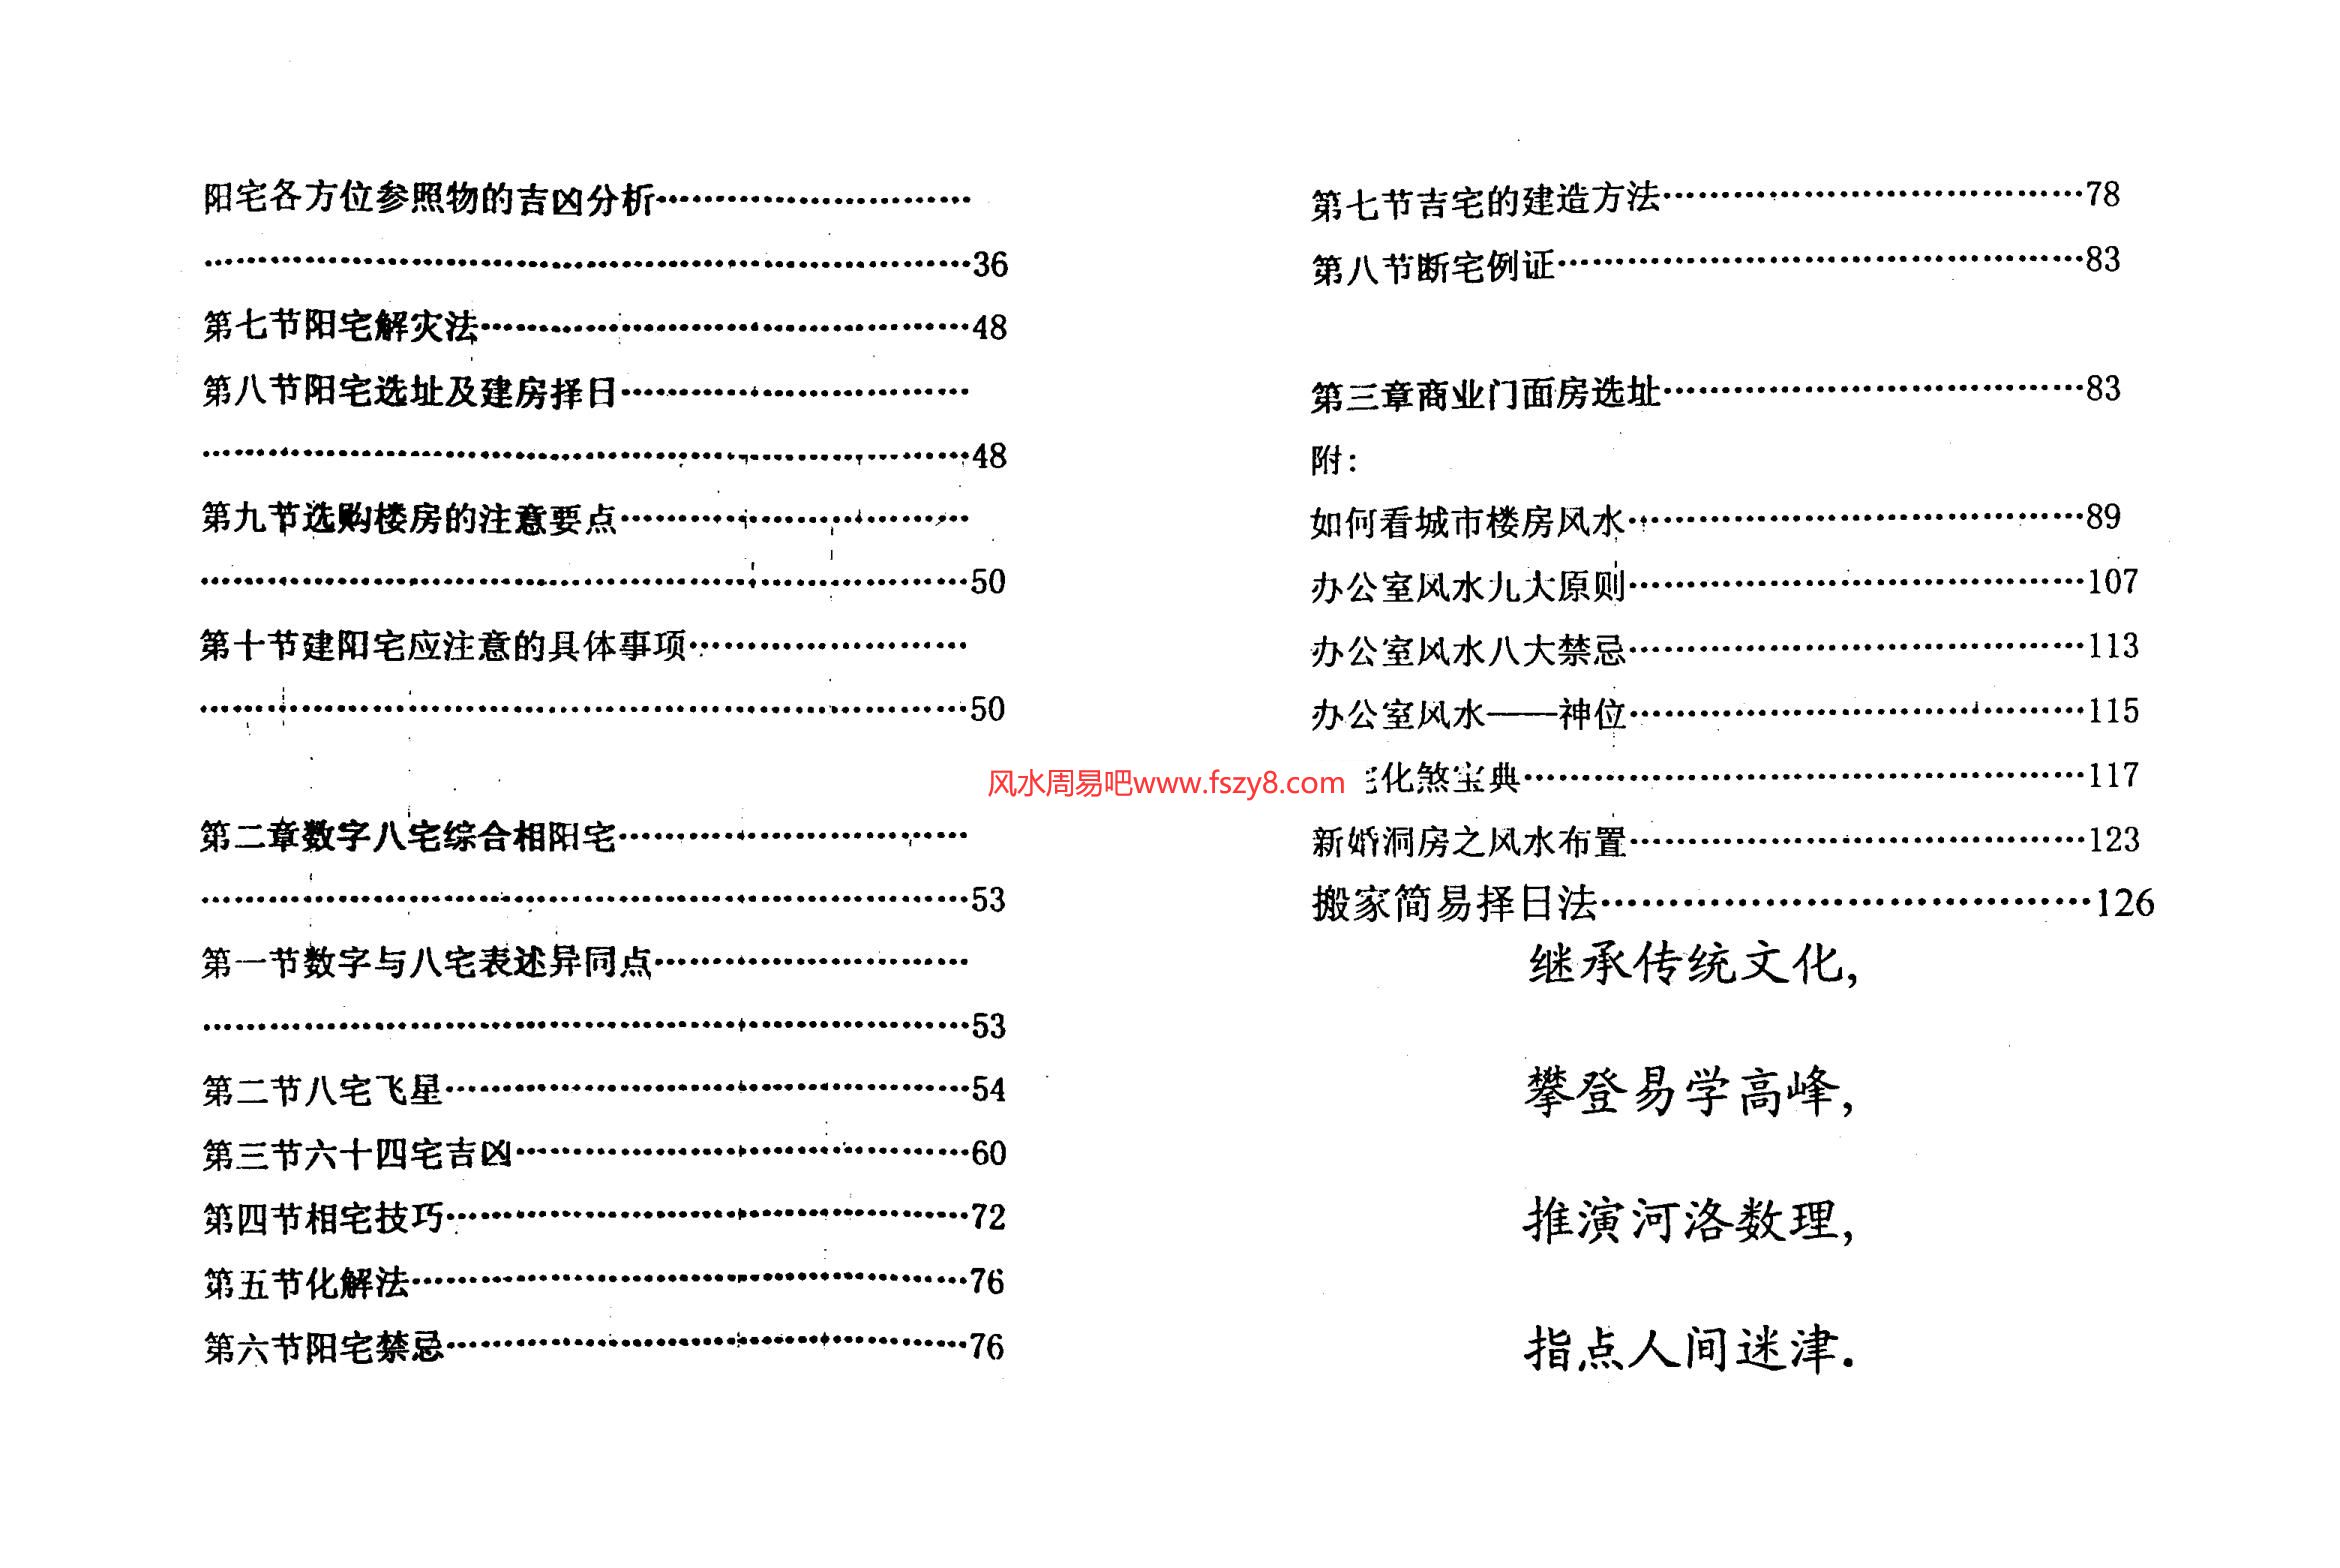 潘福星-数字信息断阳宅风水PDF电子书67页 潘福星数字信息断阳宅风水书(图3)